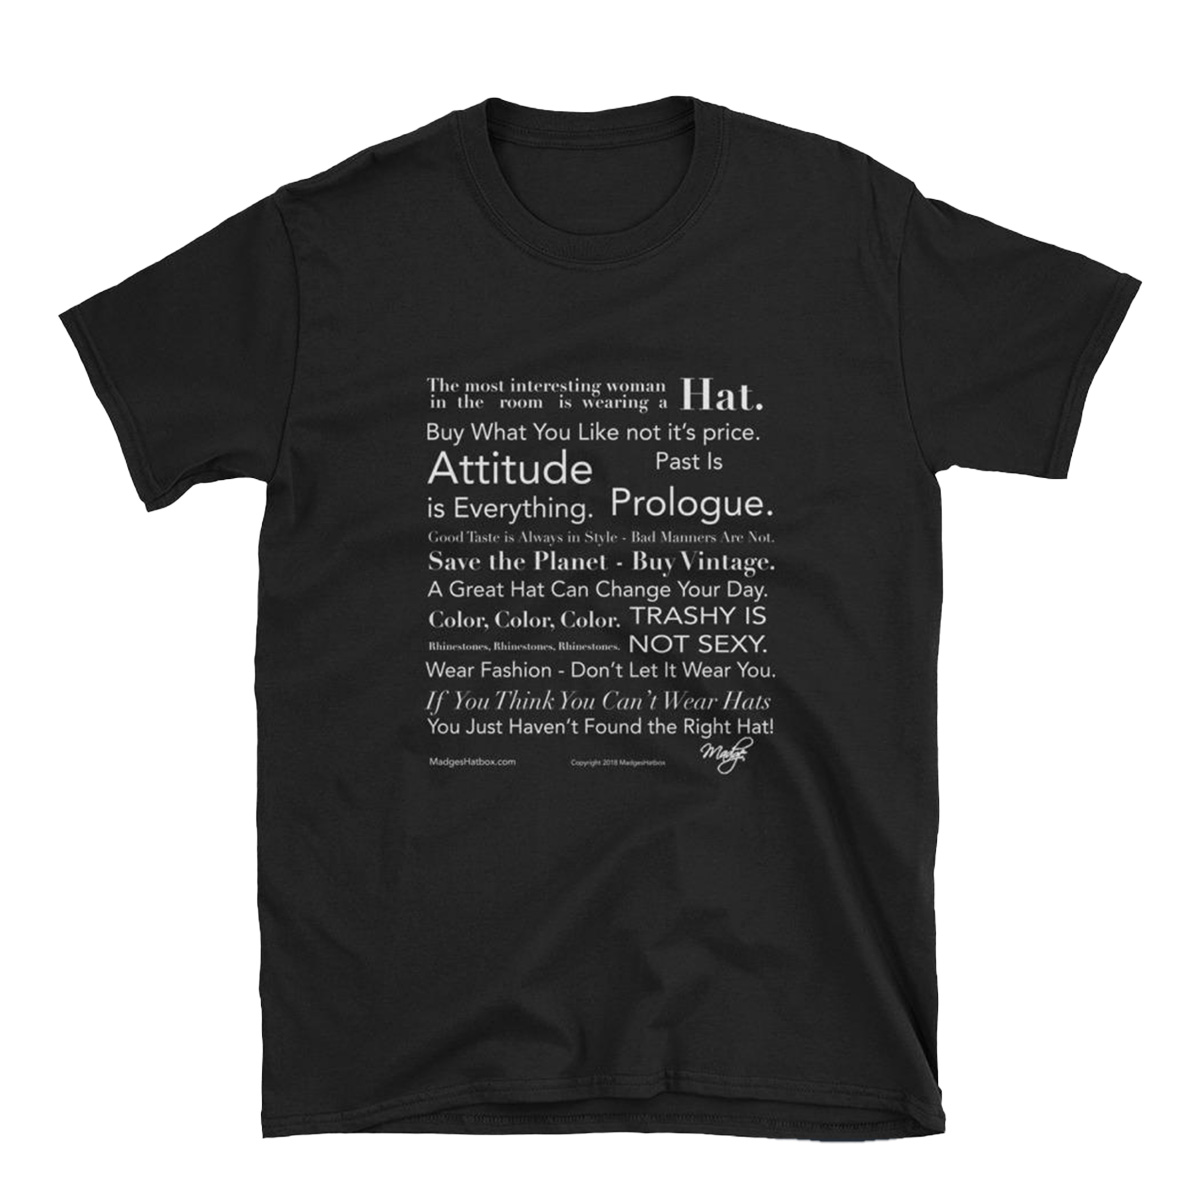 Madge's Manifesto T-shirt